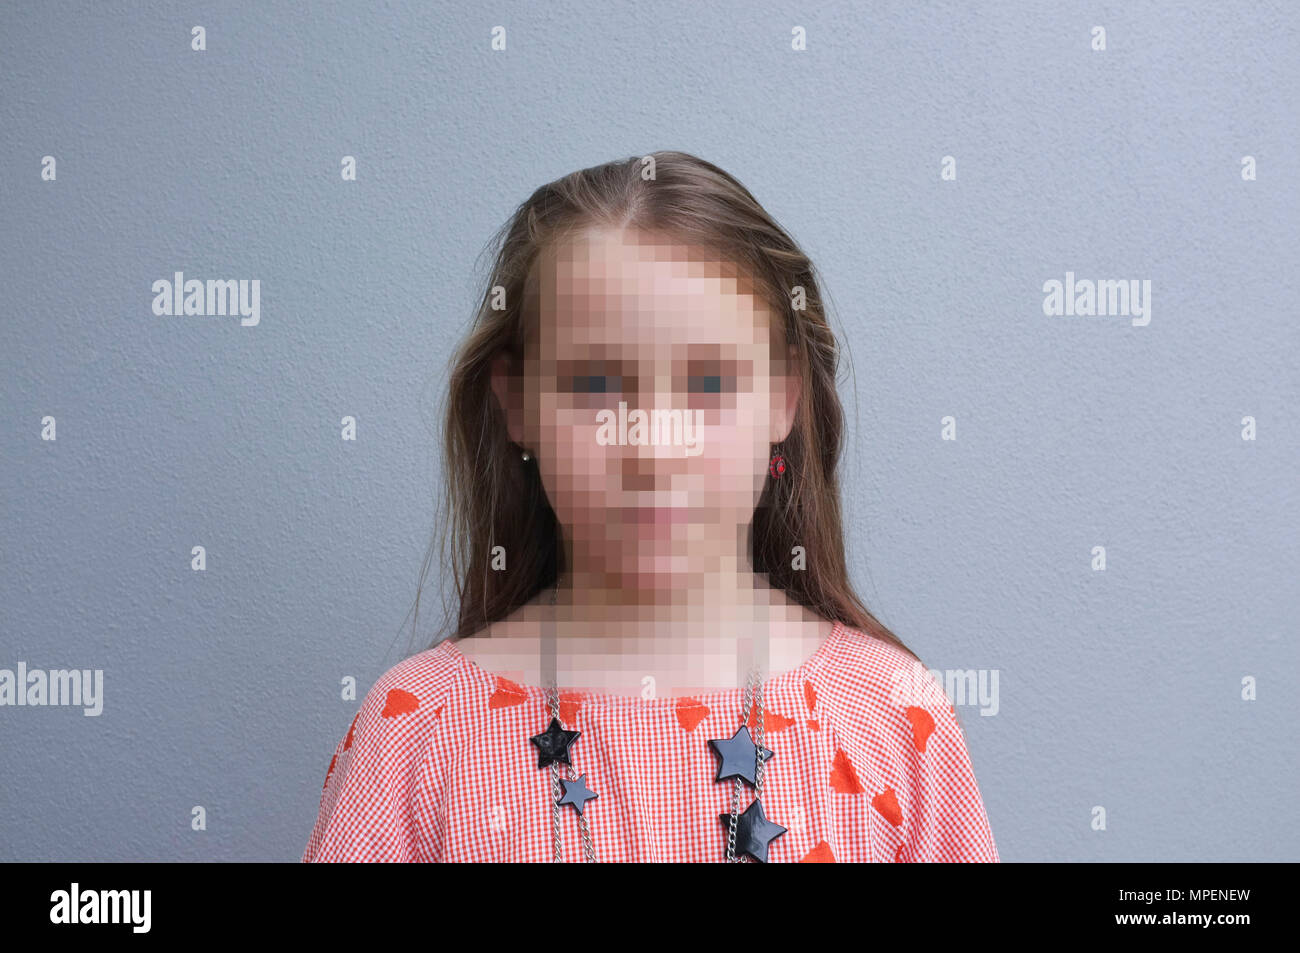 Portrait d'une fille contre un mur gris, avec son visage concept PIBR pixélisé Banque D'Images